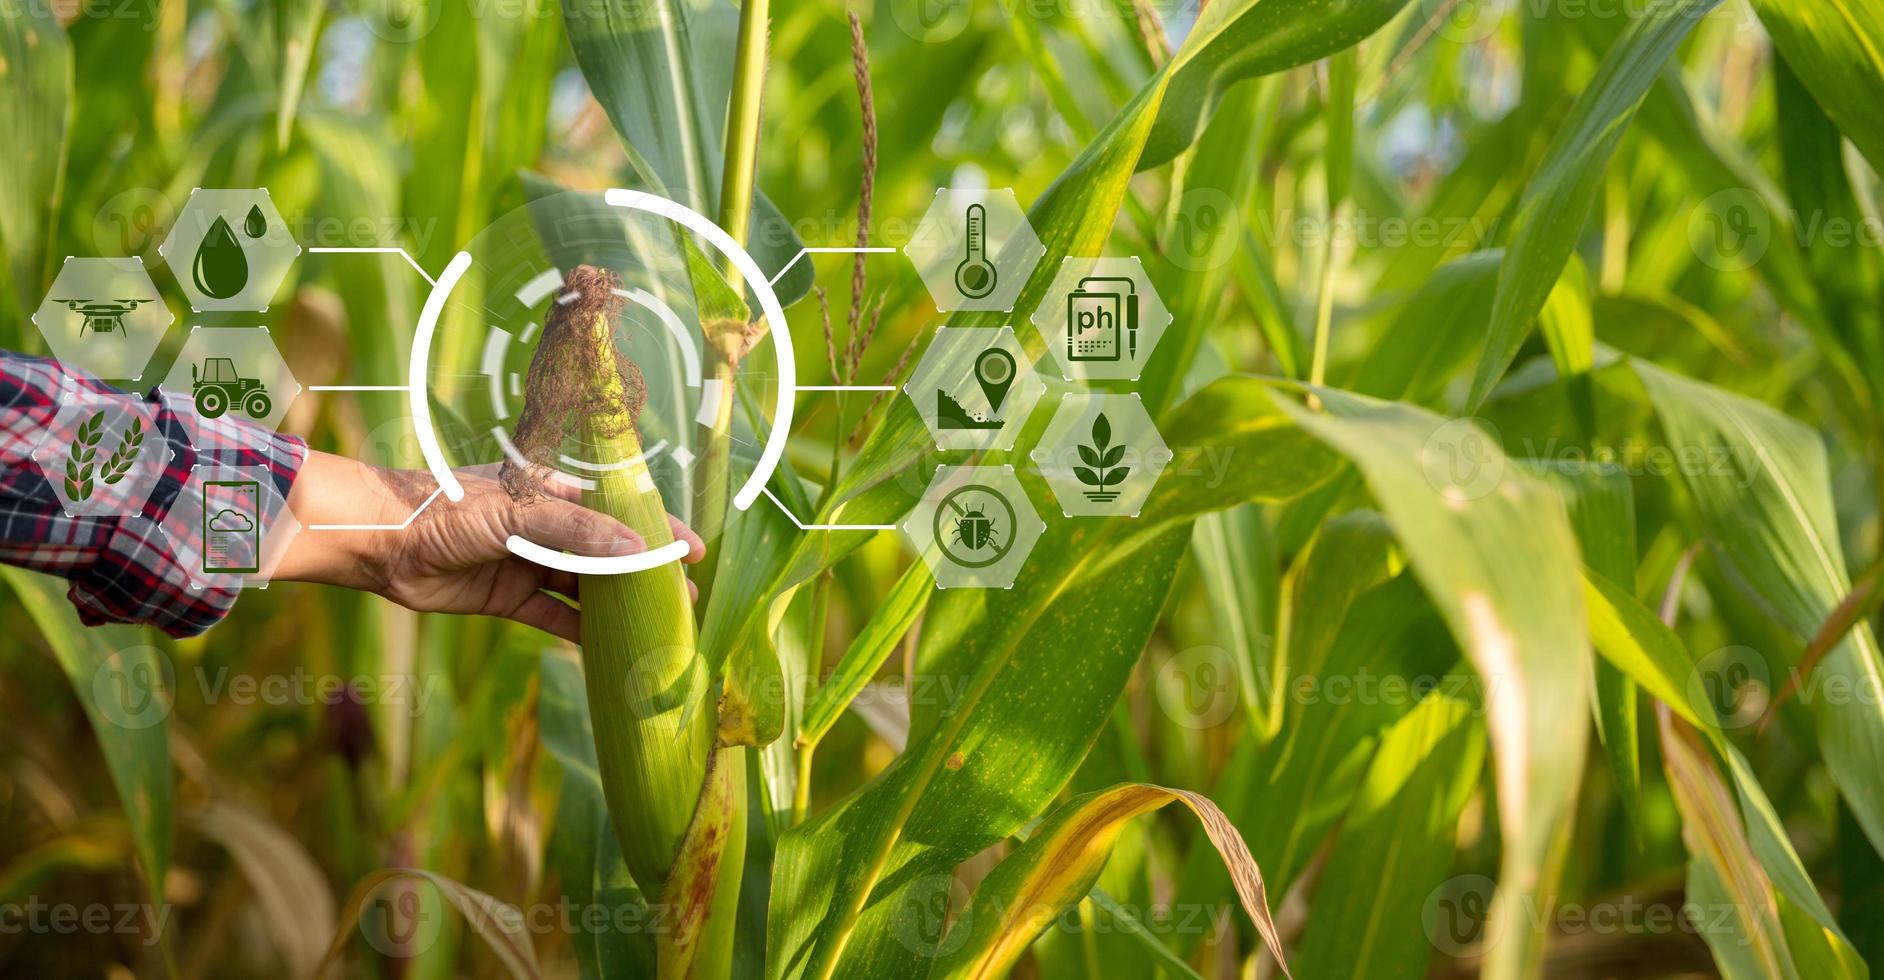 agriculteur dans un champ de maïs à l'aide d'une tablette numérique pour une agriculture intelligente. technologie d'innovation pour le système agricole intelligent, la gestion de l'agriculture. concept d'entreprise agricole moderne d'agriculture intelligente. photo